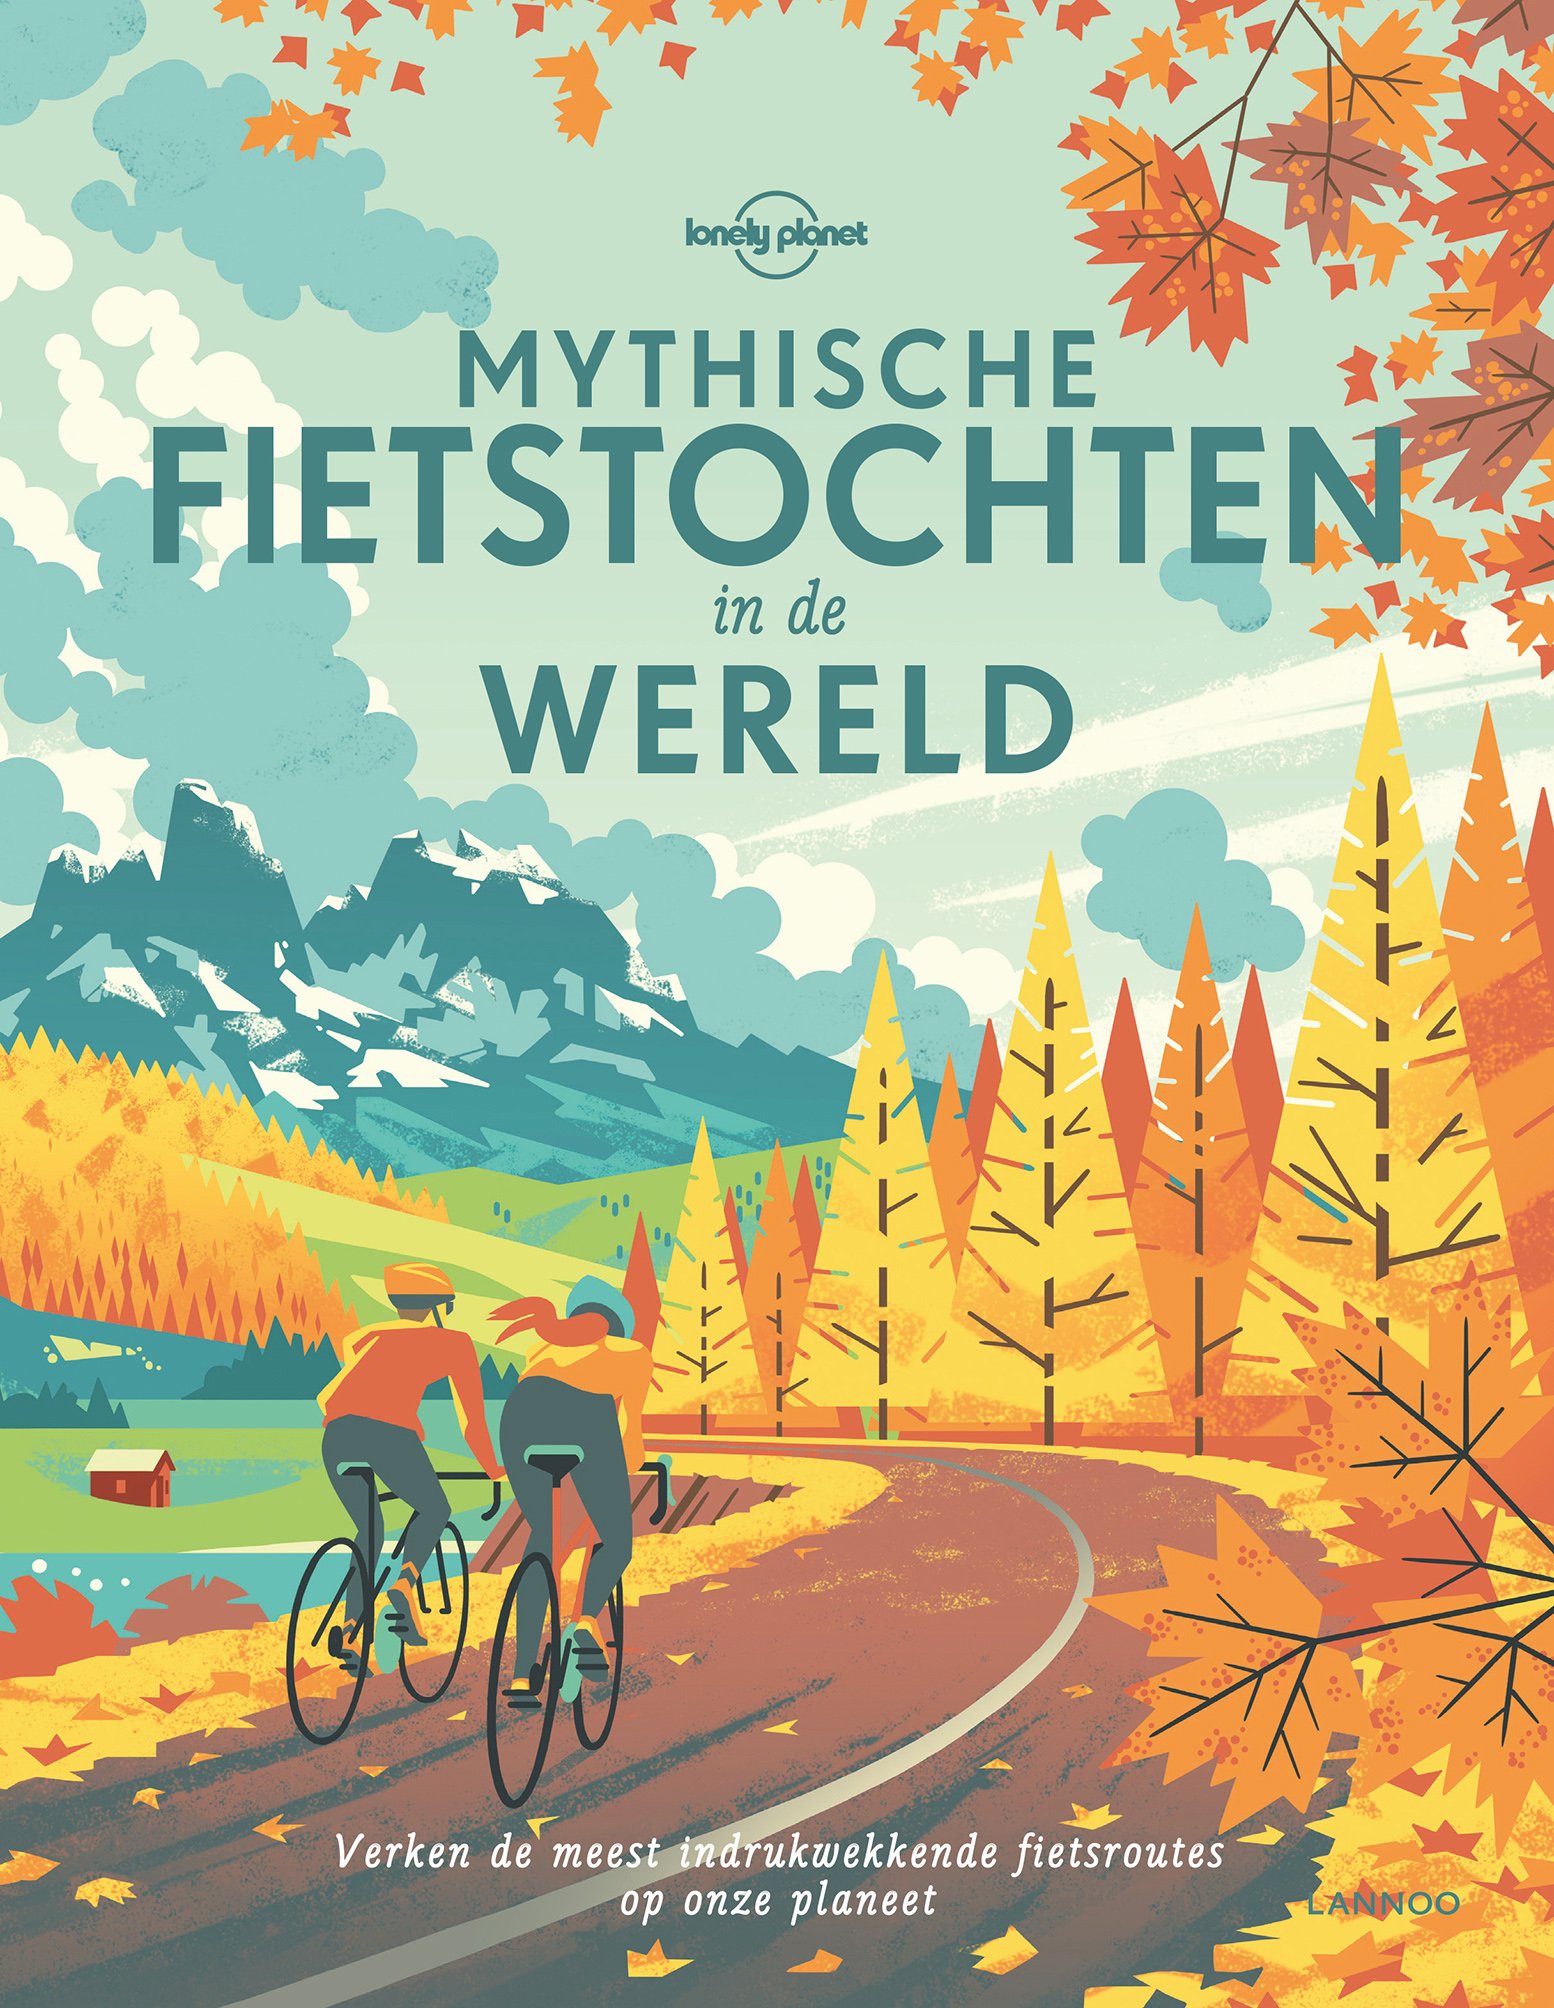 Mythische fietstochten in de wereld meest indruk.fietsroute